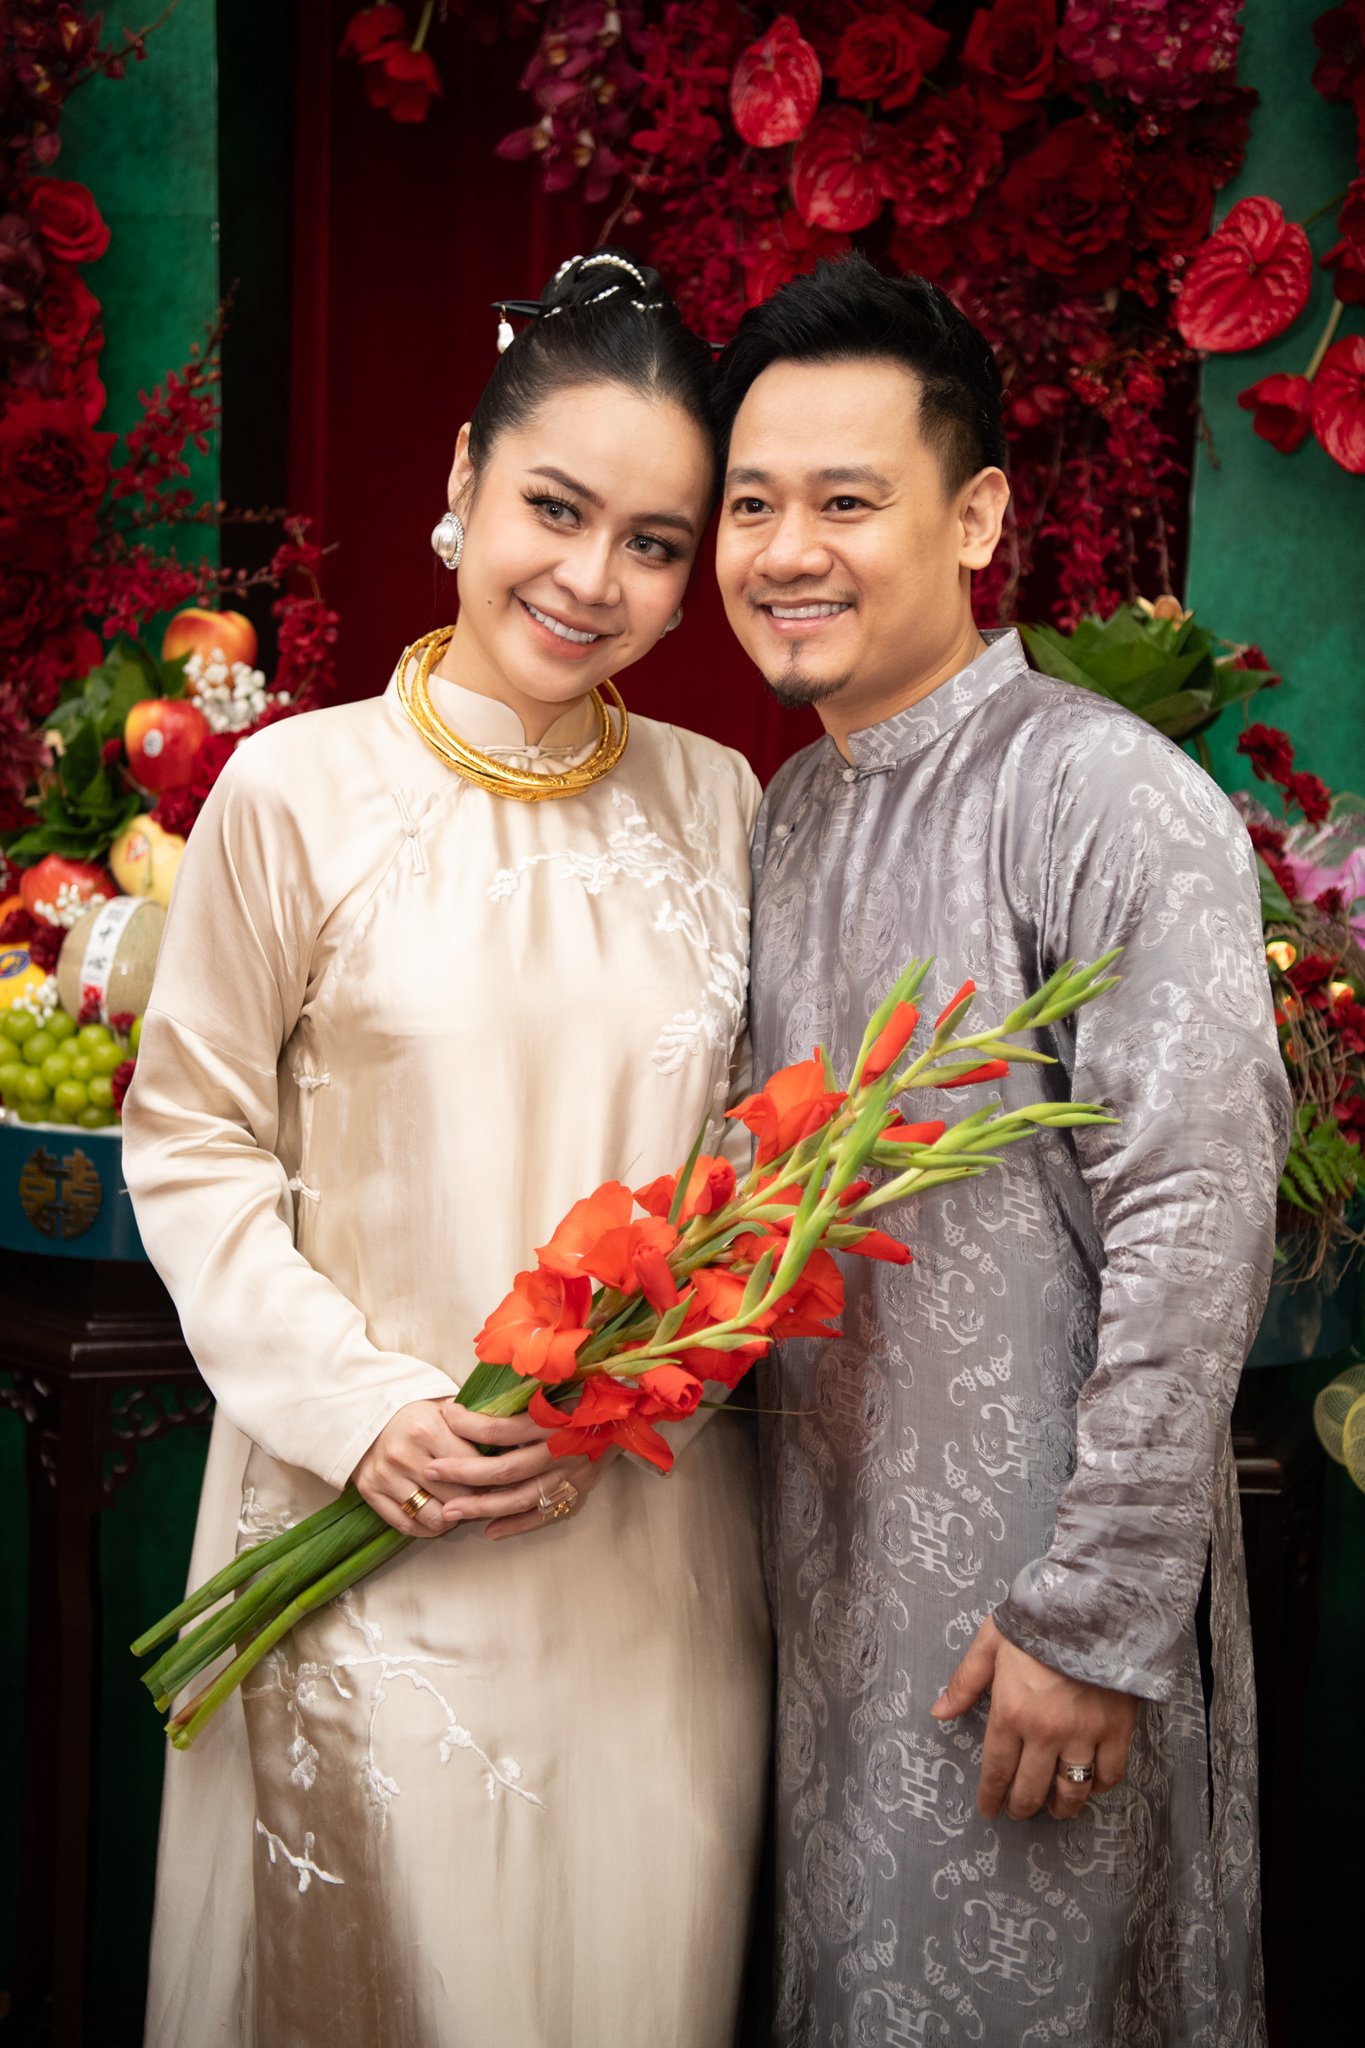 Lần đầu tiên có hôn lễ sao Việt để vợ lái xe hoa đưa chồng 'về dinh', danh tính cặp đôi gây bất ngờ - ảnh 1